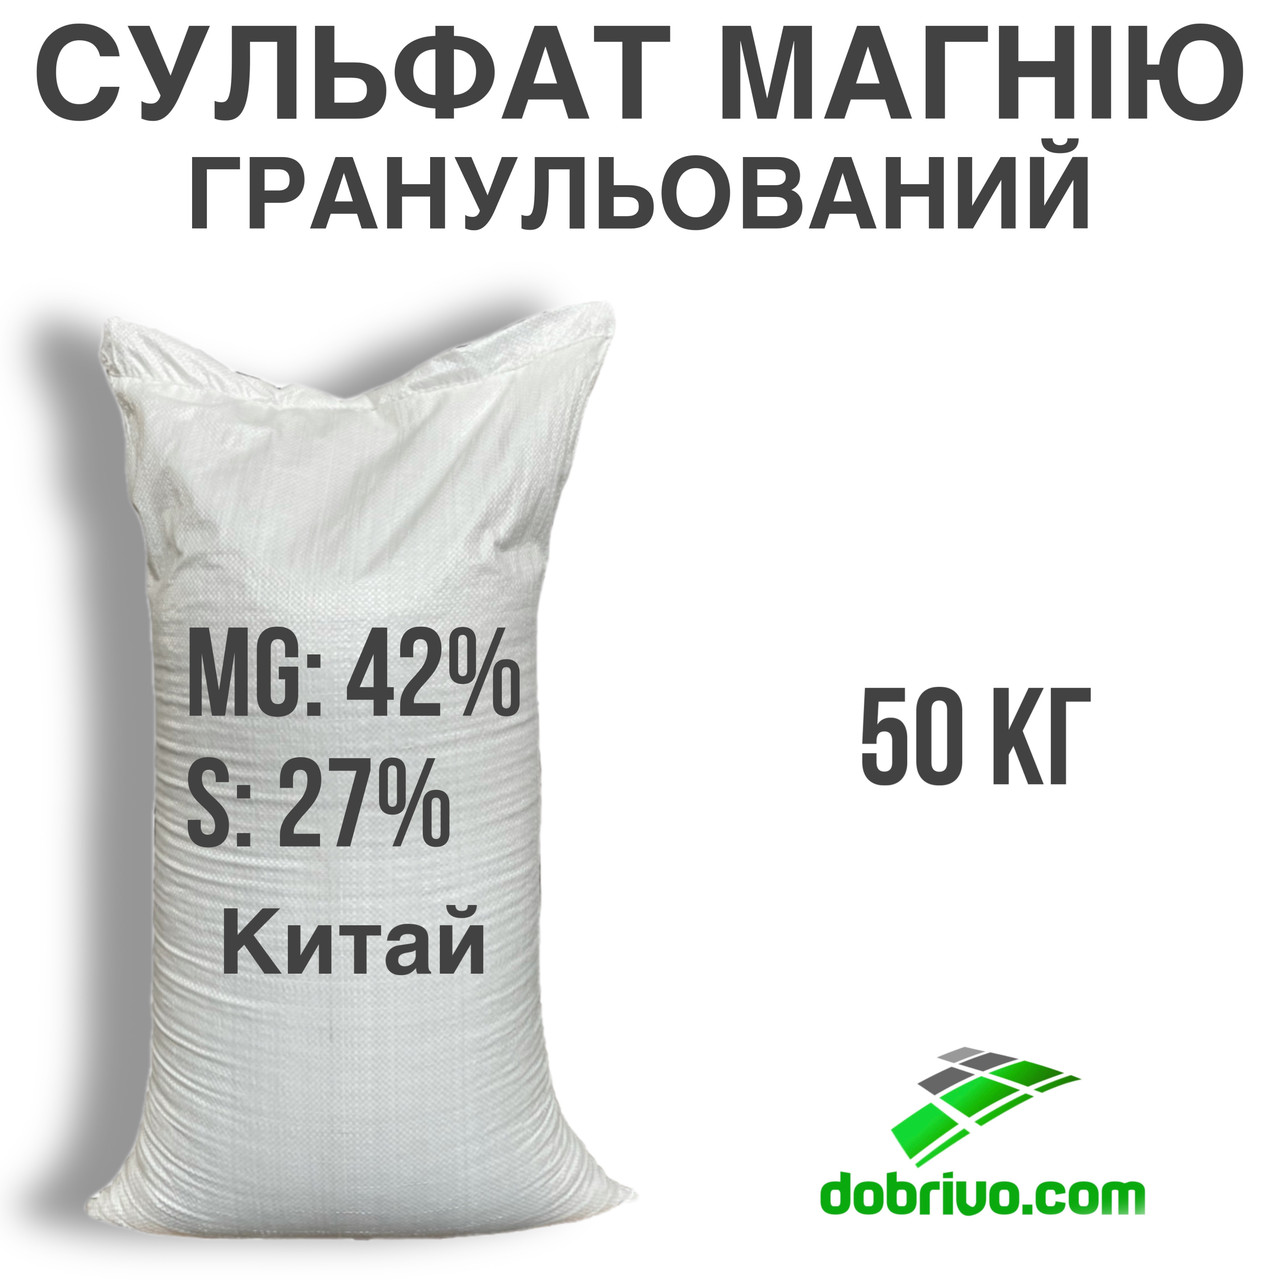 Сульфат Магнію Гранульований MgO - 27%, SO - 42%, мішок 50 кг, мінеральне добриво